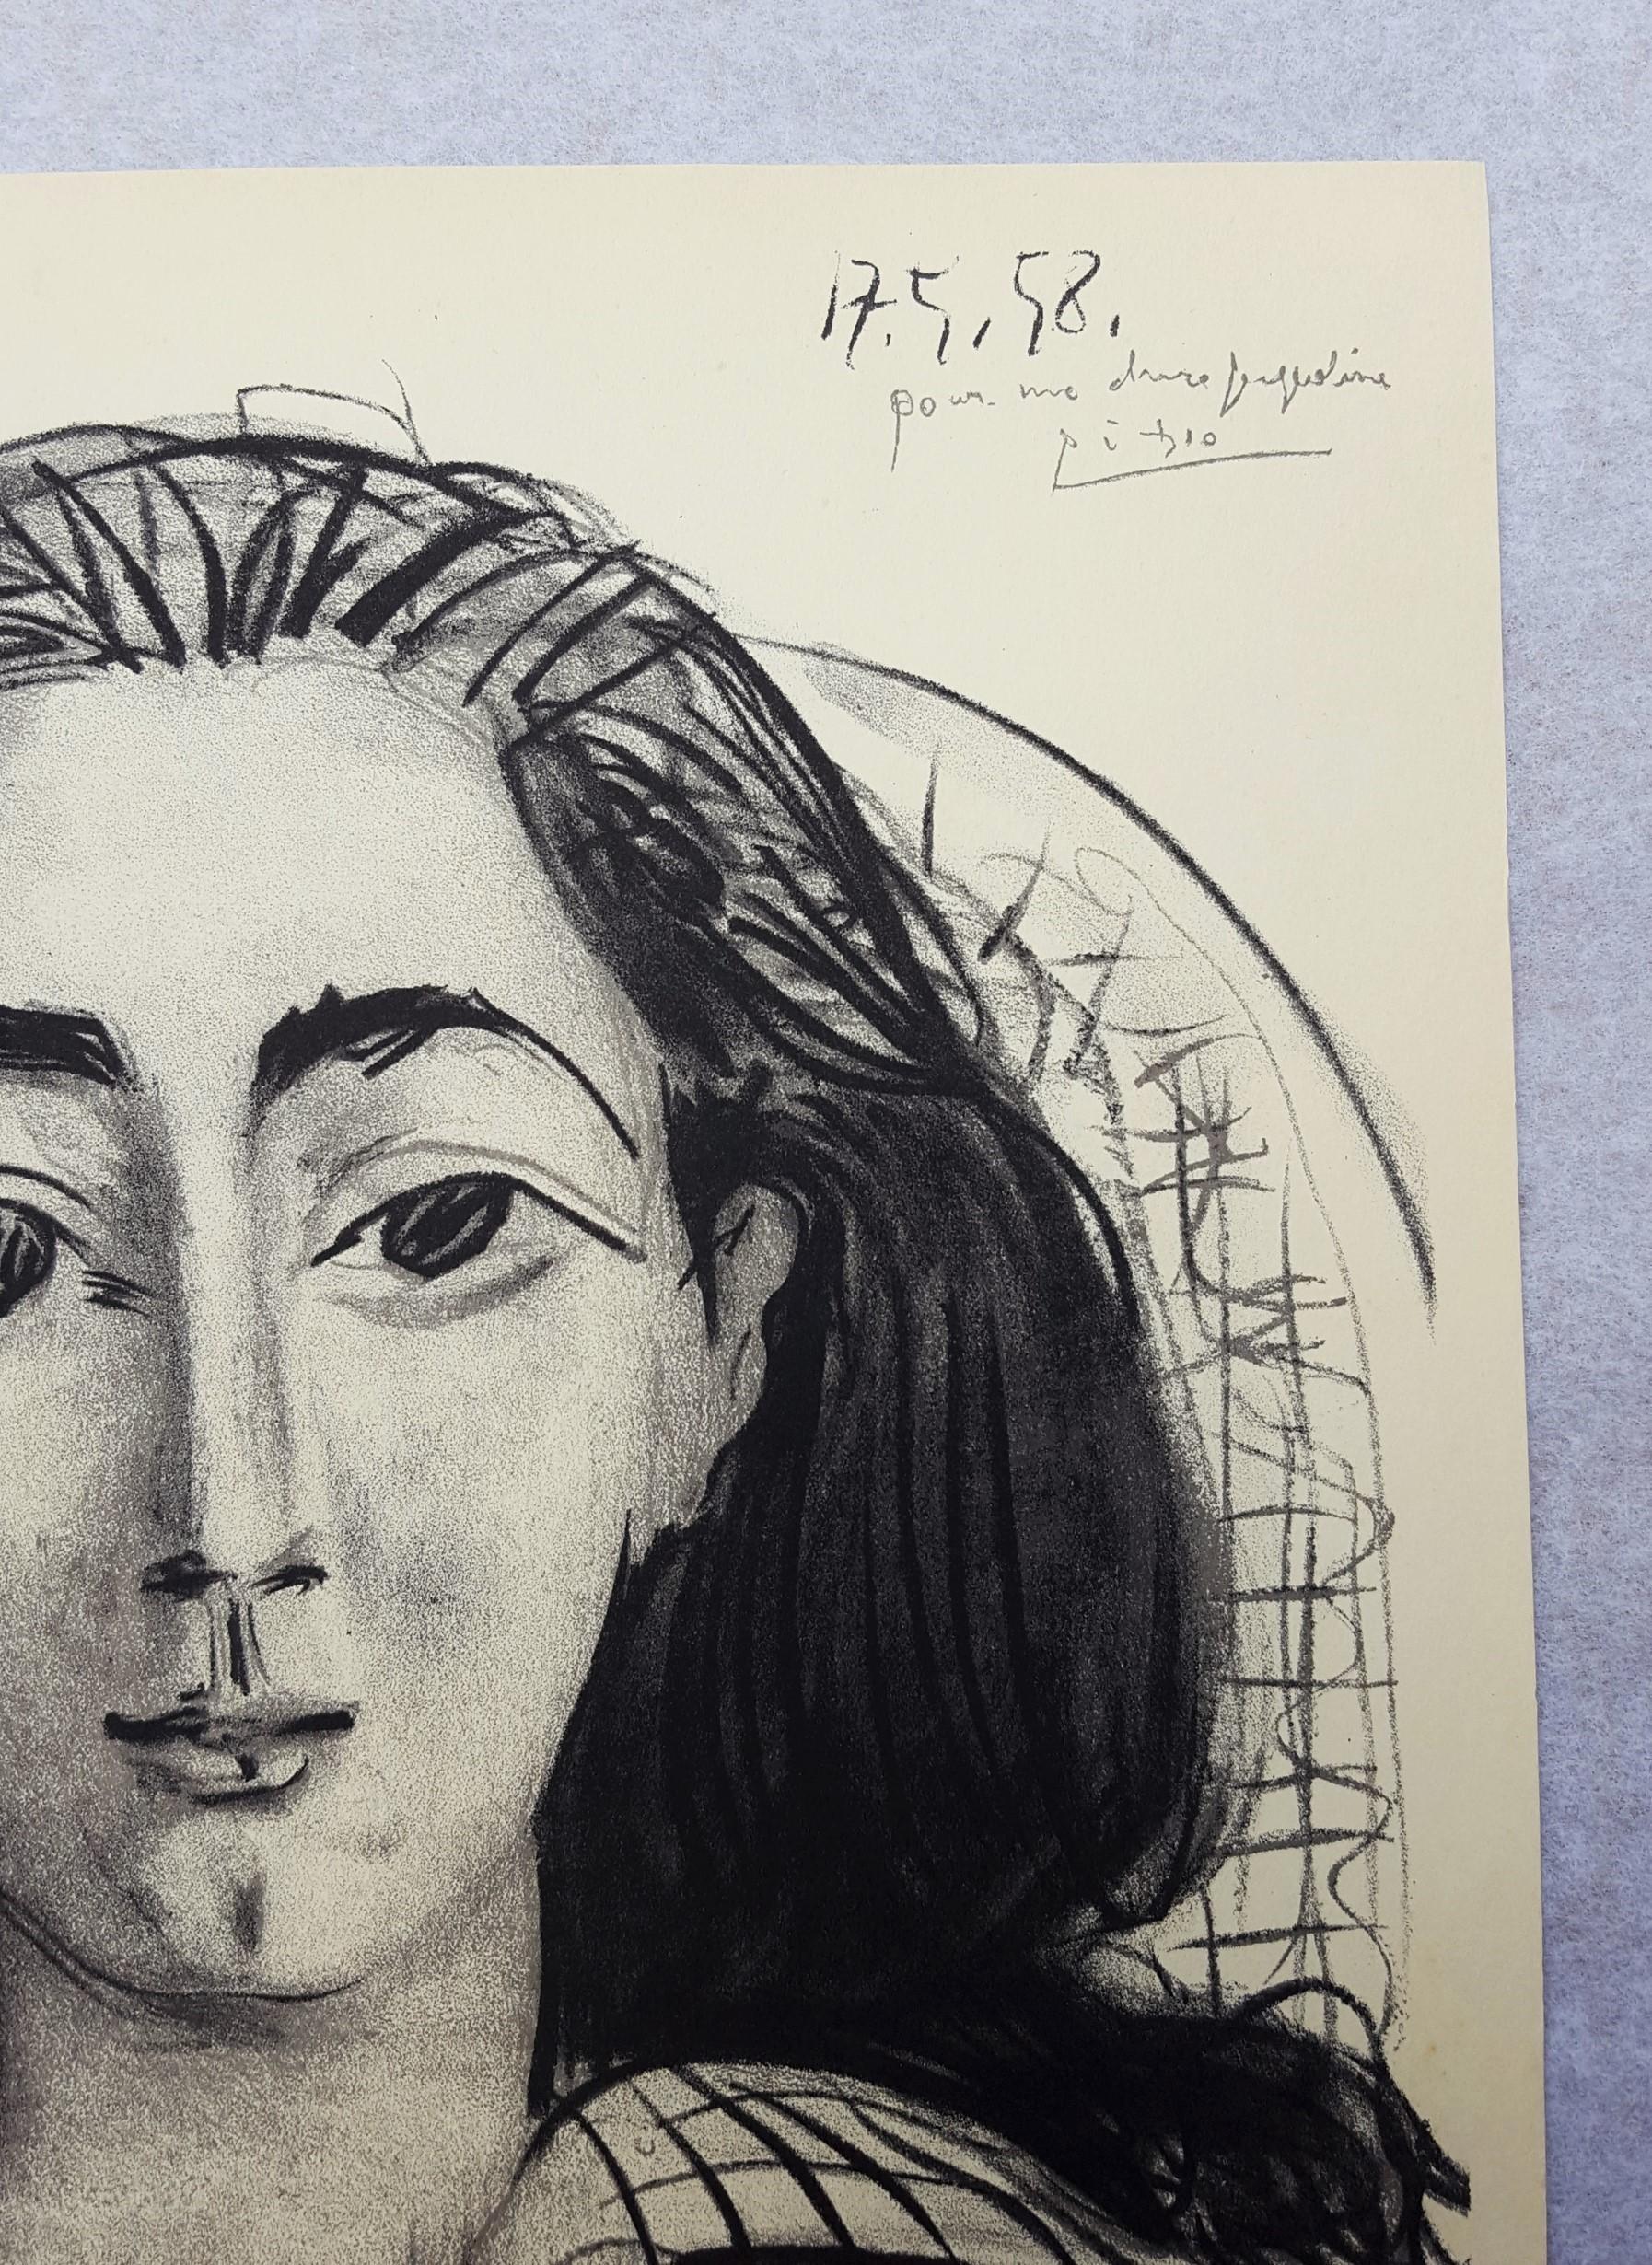 Jacqueline - Cubist Print by (after) Pablo Picasso